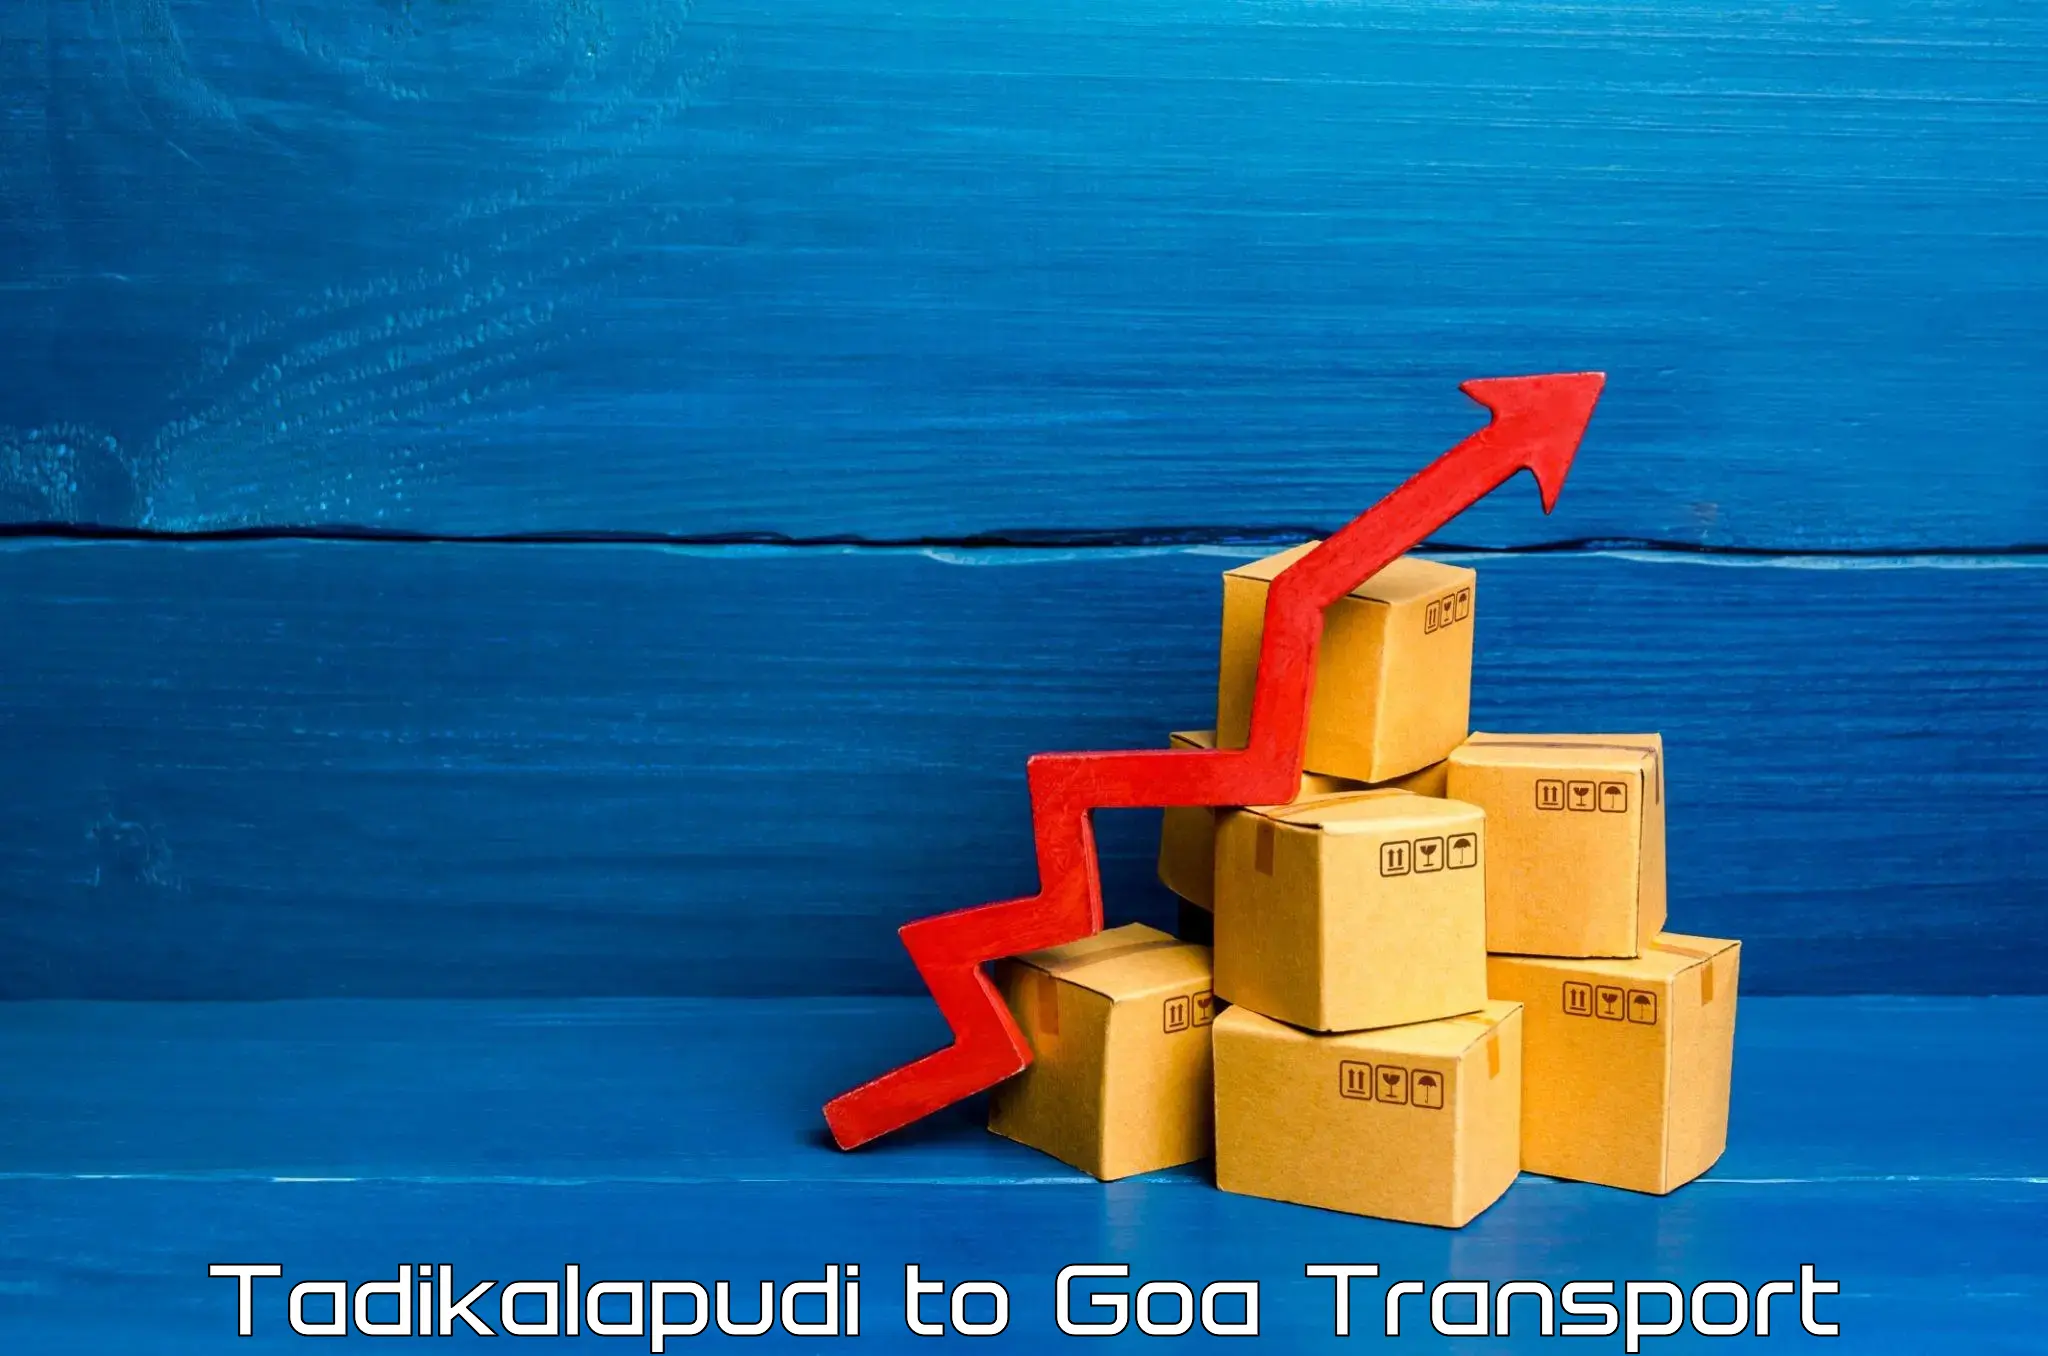 Air freight transport services Tadikalapudi to Goa